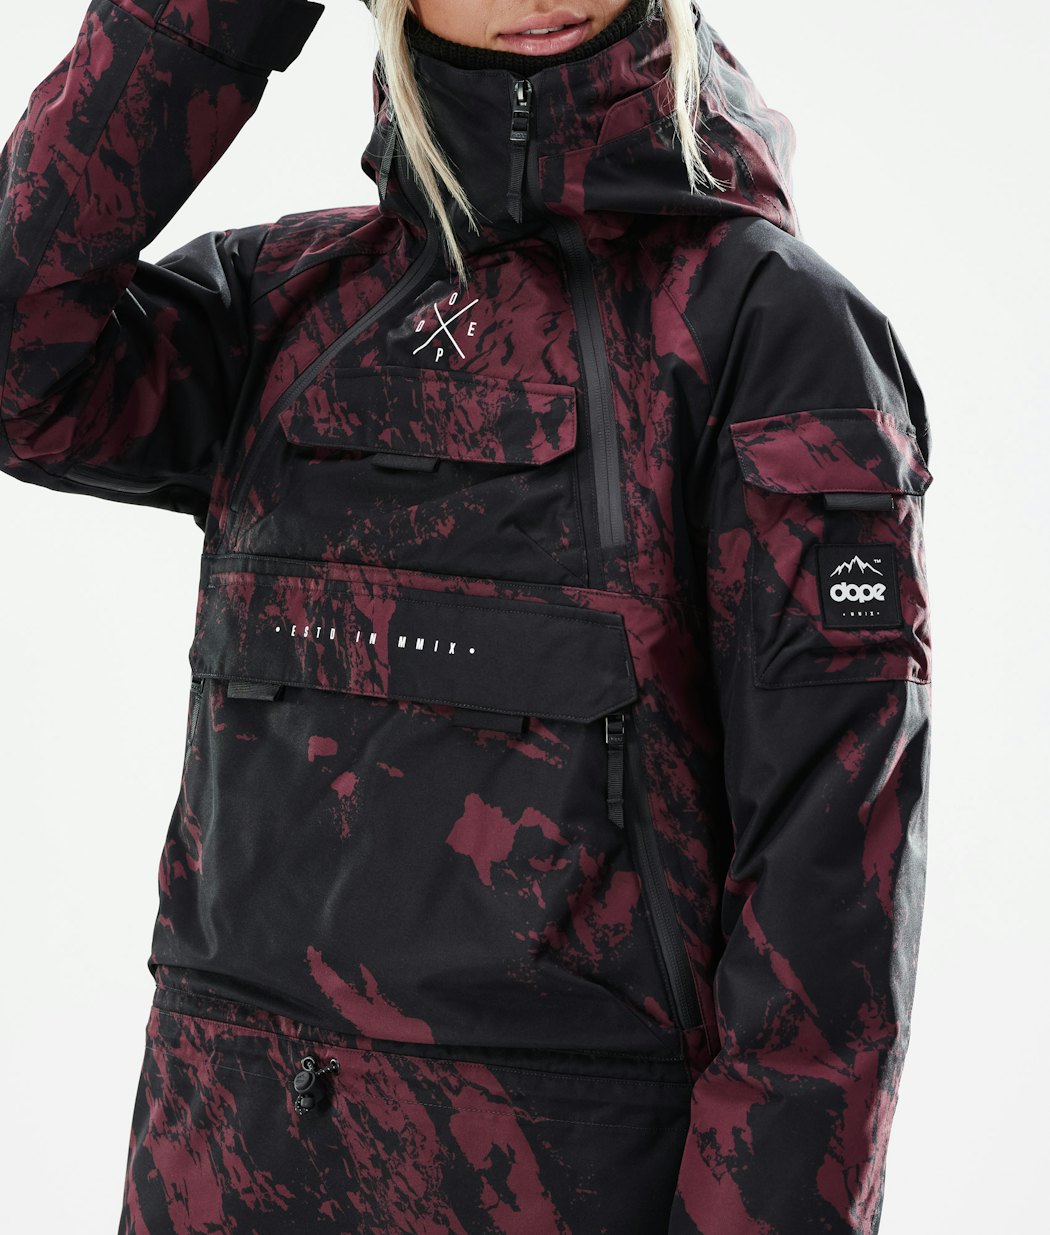 Dope Akin W 2021 Women's Snowboard Jacket Paint Burgundy